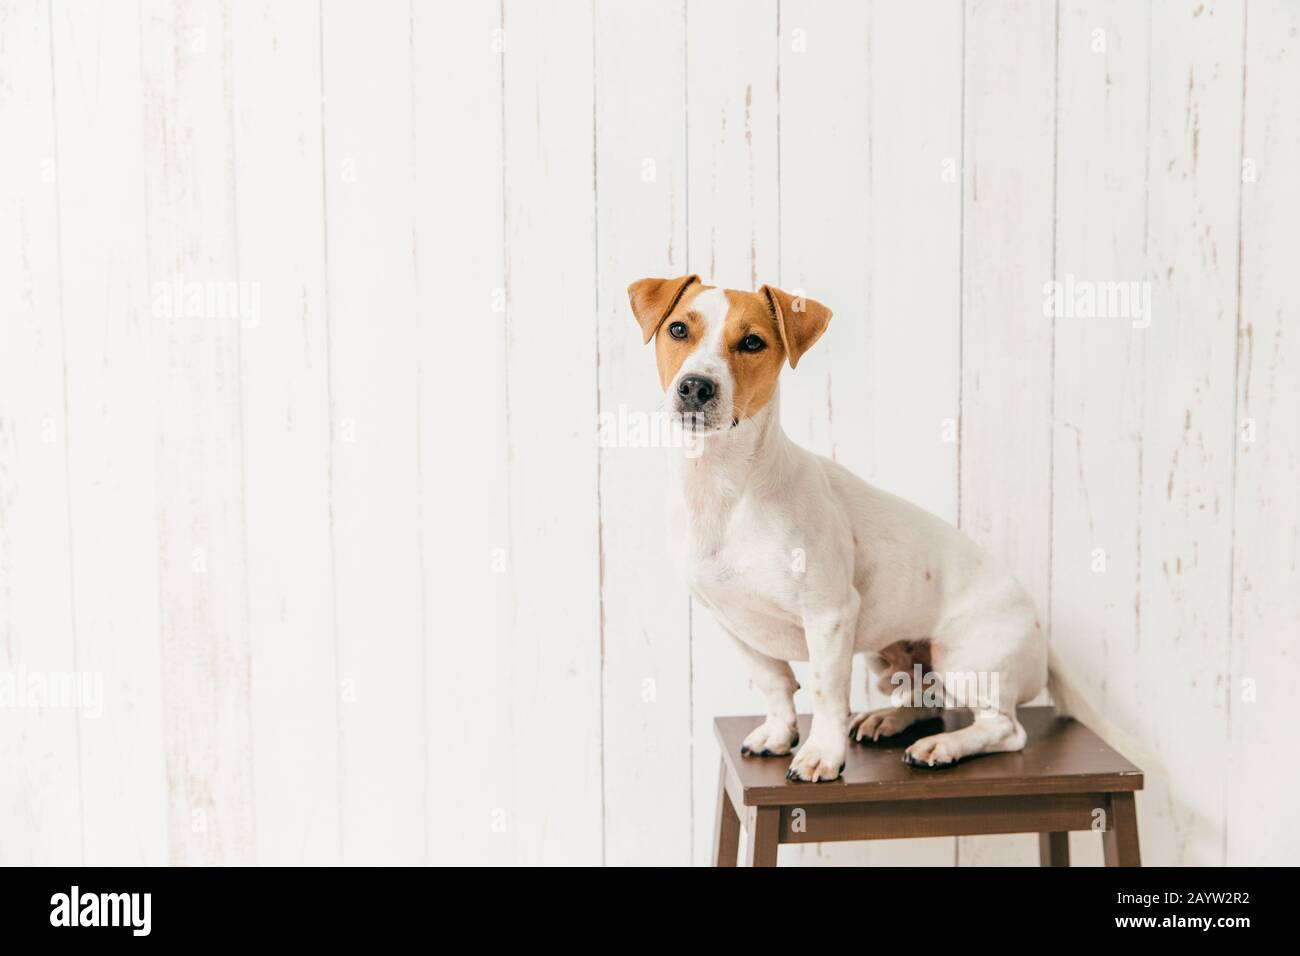 Piccolo jack russell terrier cane sulla sedia ha smart guardare fotocamera, avvisi qualcosa di interessante in distanza, pone contro il muro bianco con cop vuoto Foto Stock